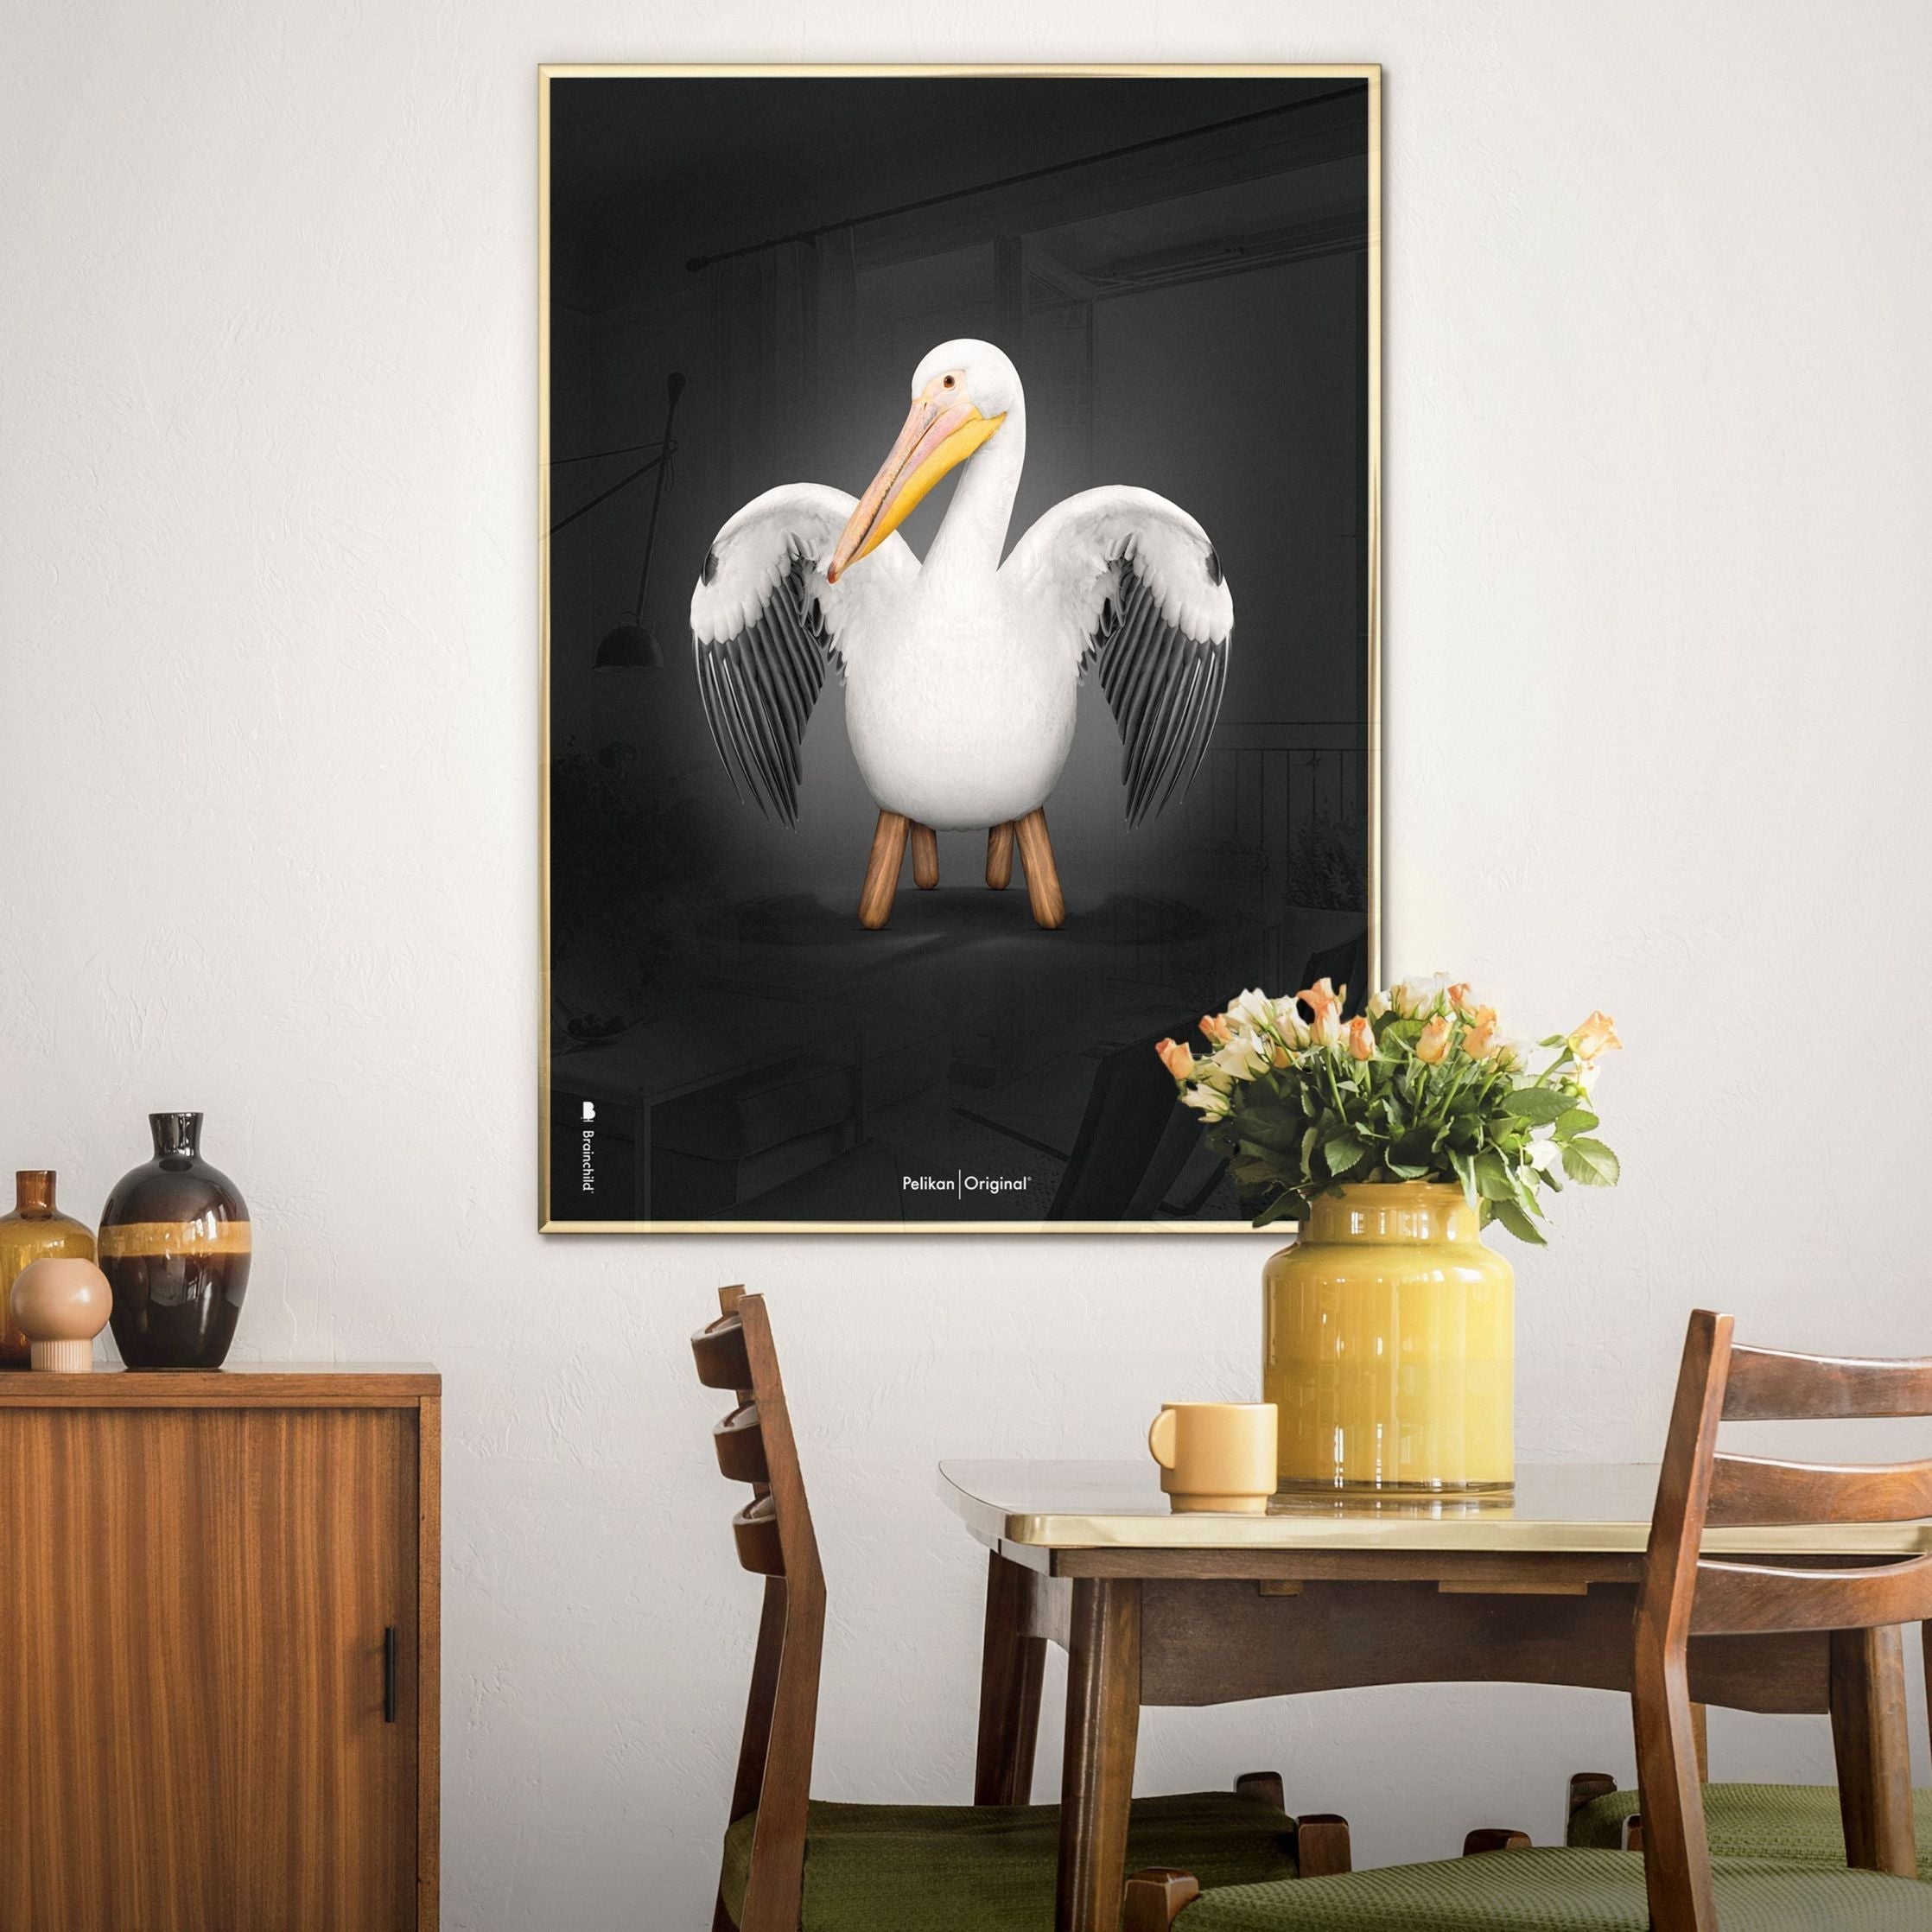 Brainchild Pelikan Classic Poster, Frame Made of Light Wood 70x100 cm, svart bakgrunn